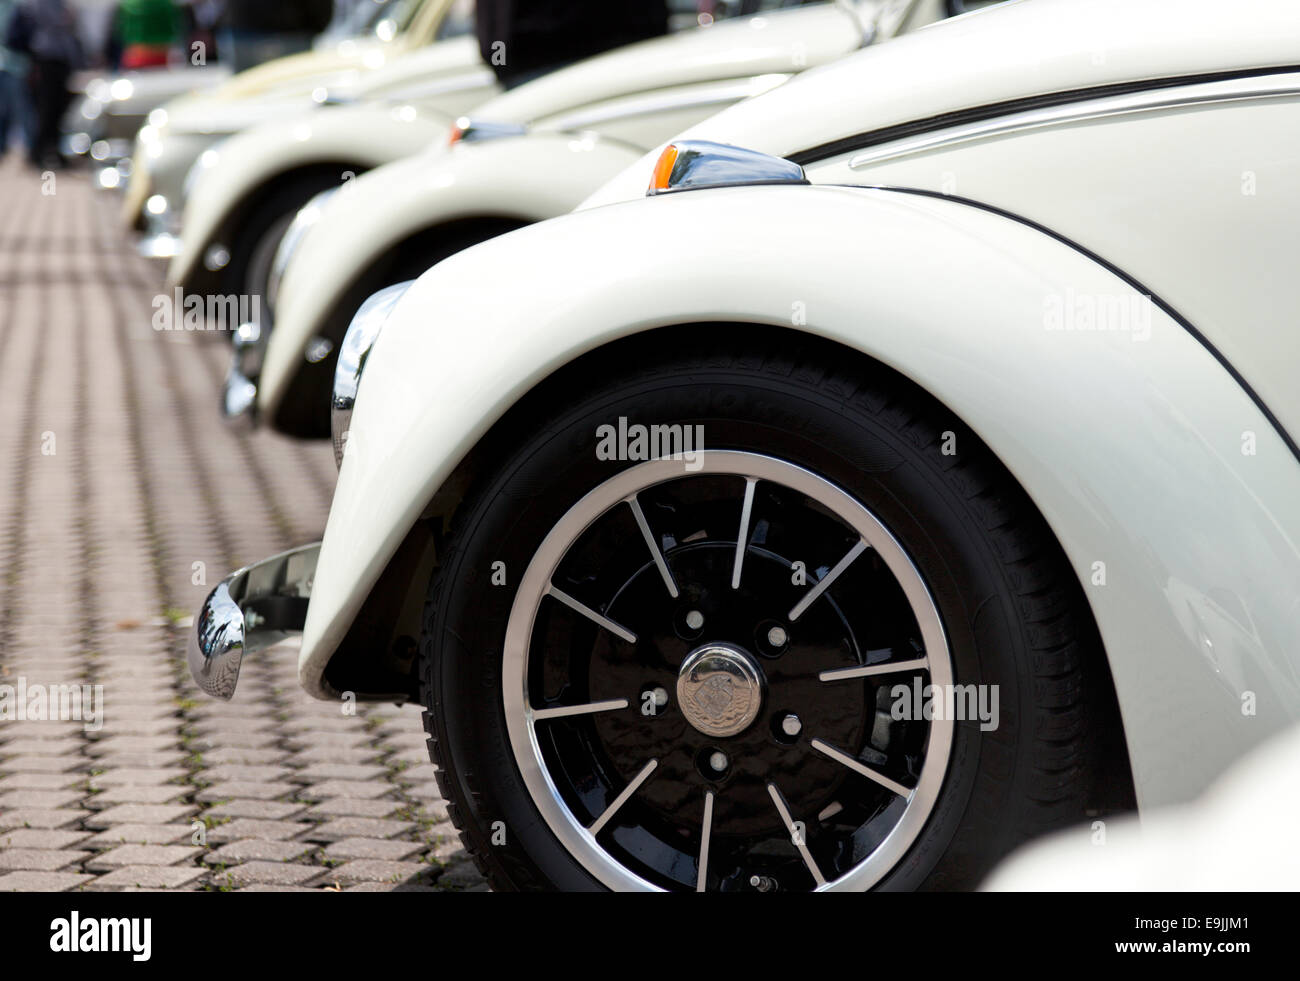 Reihe von Volkswagen Käfer Oldtimer, Nahaufnahme von Fender und Porsche Designrad, geringe Schärfentiefe Stockfoto